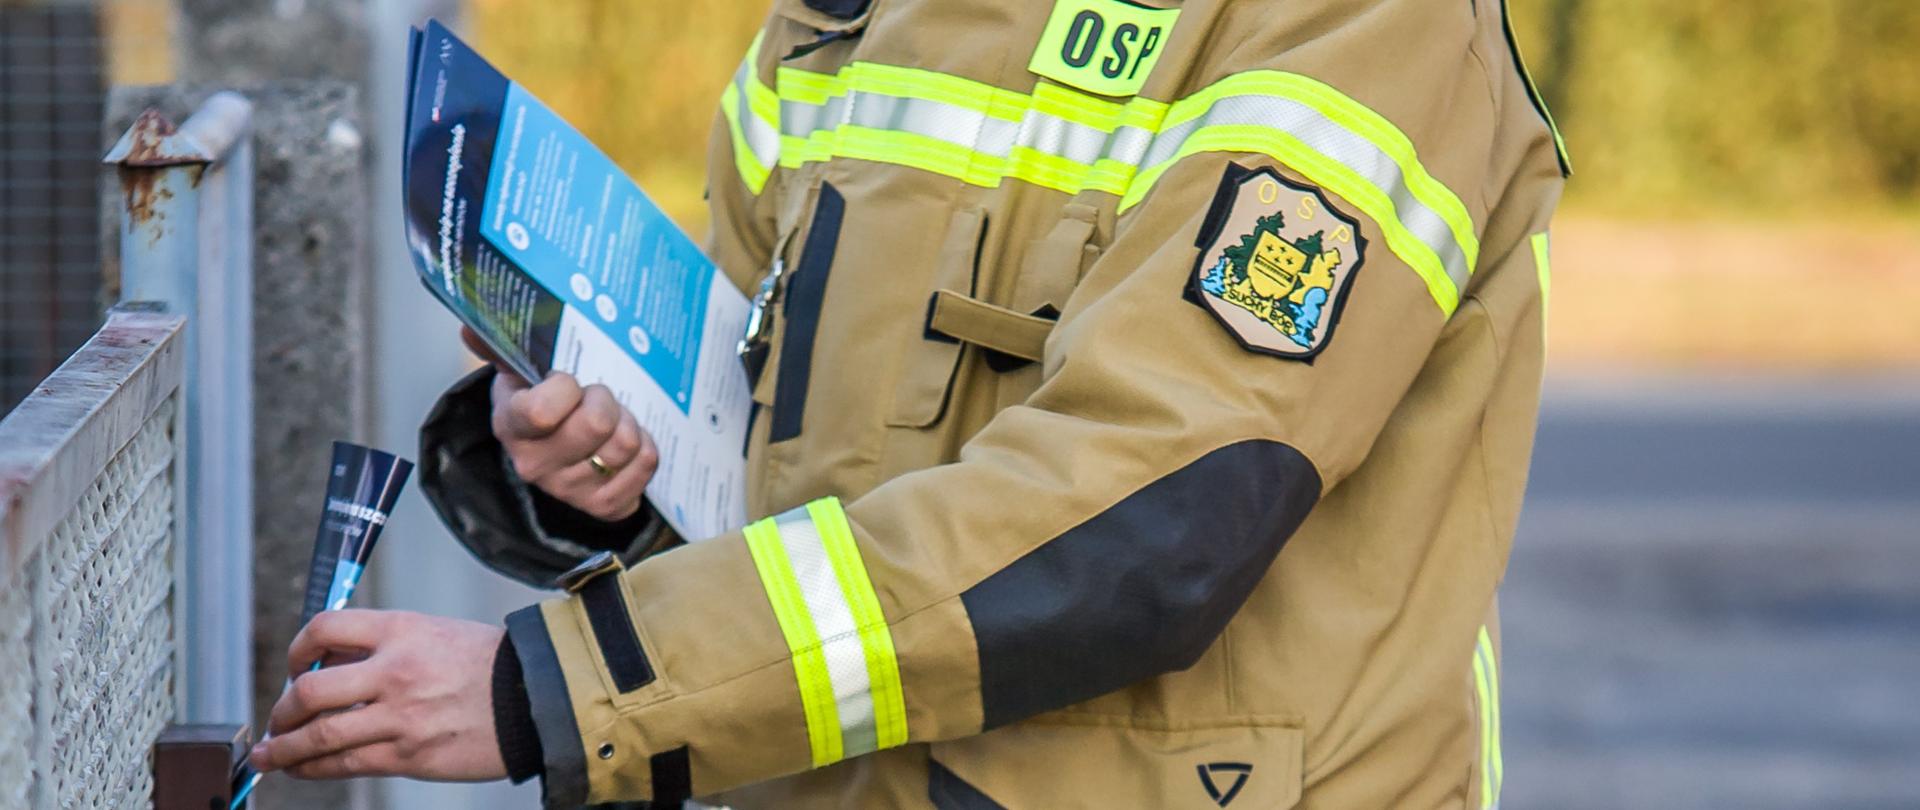 Zdjęcie przedstawia strażaka w ubraniu specjalnym, który w ręku trzyma ulotki i jedną z nich wrzuca do skrzynki na listy